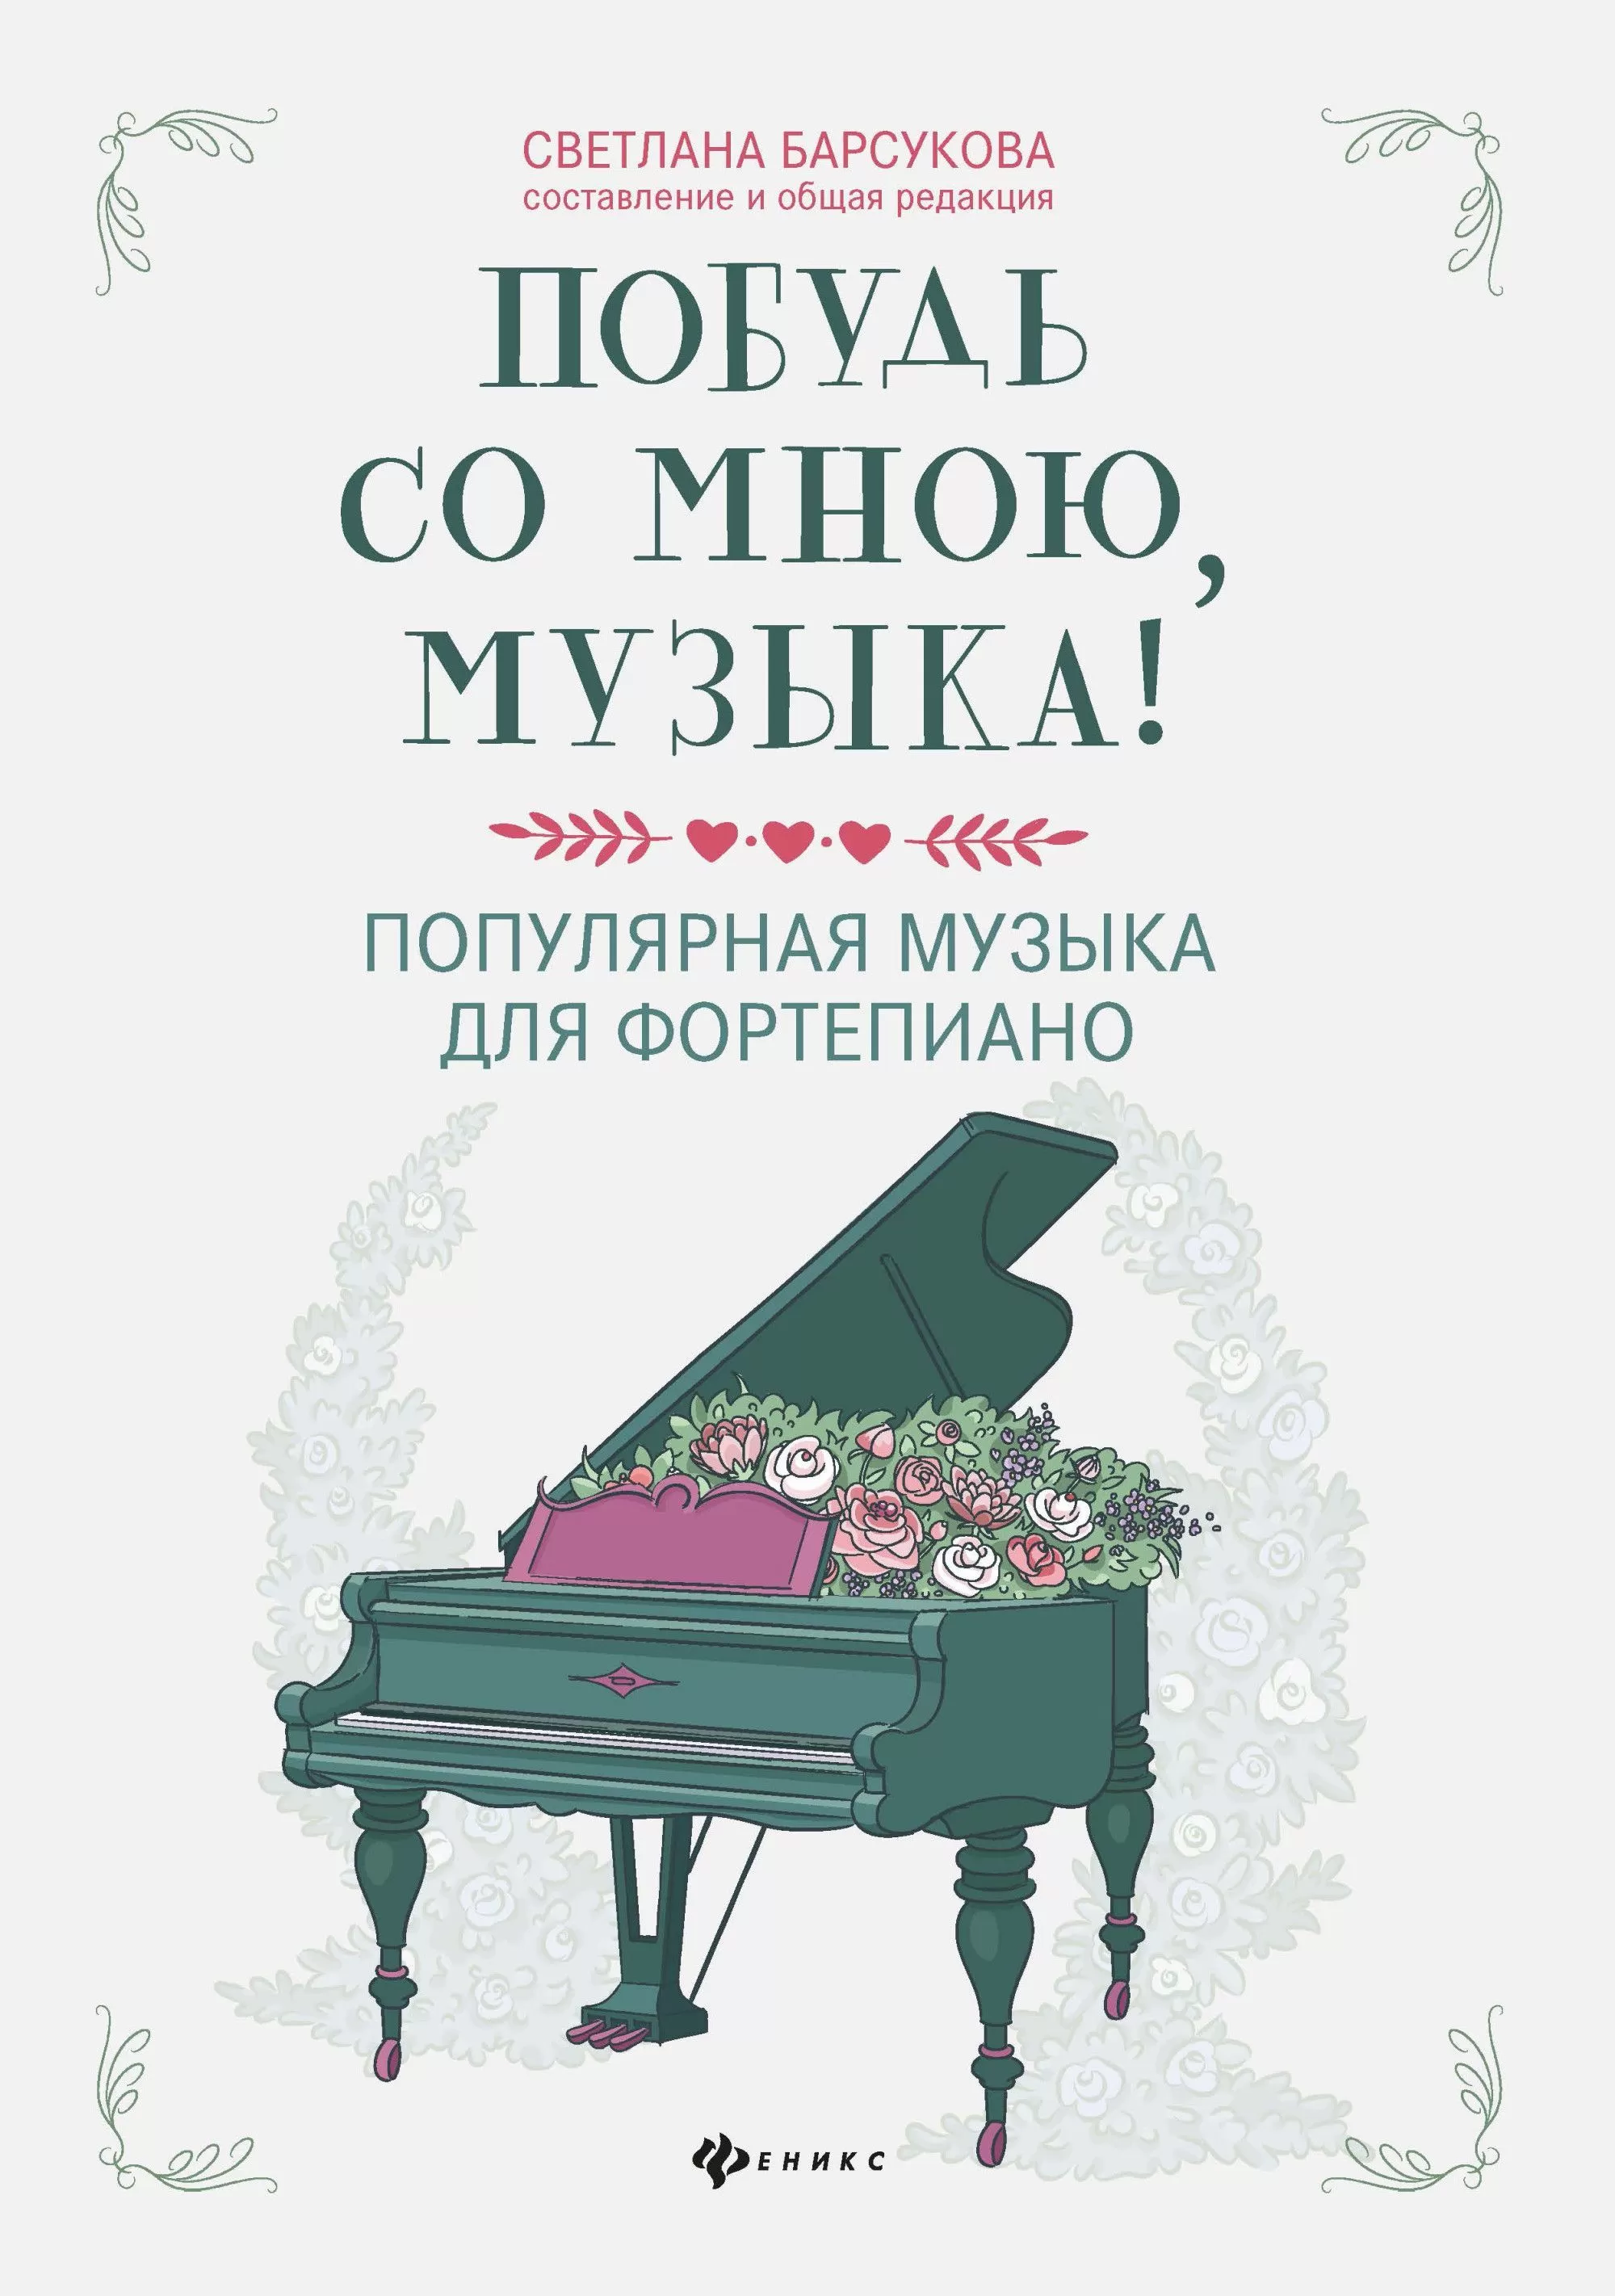 Побудь со мною, музыка!:популярная музыка для фортепиано - купить в магазине Кассандра, фото, 9790660037324, 